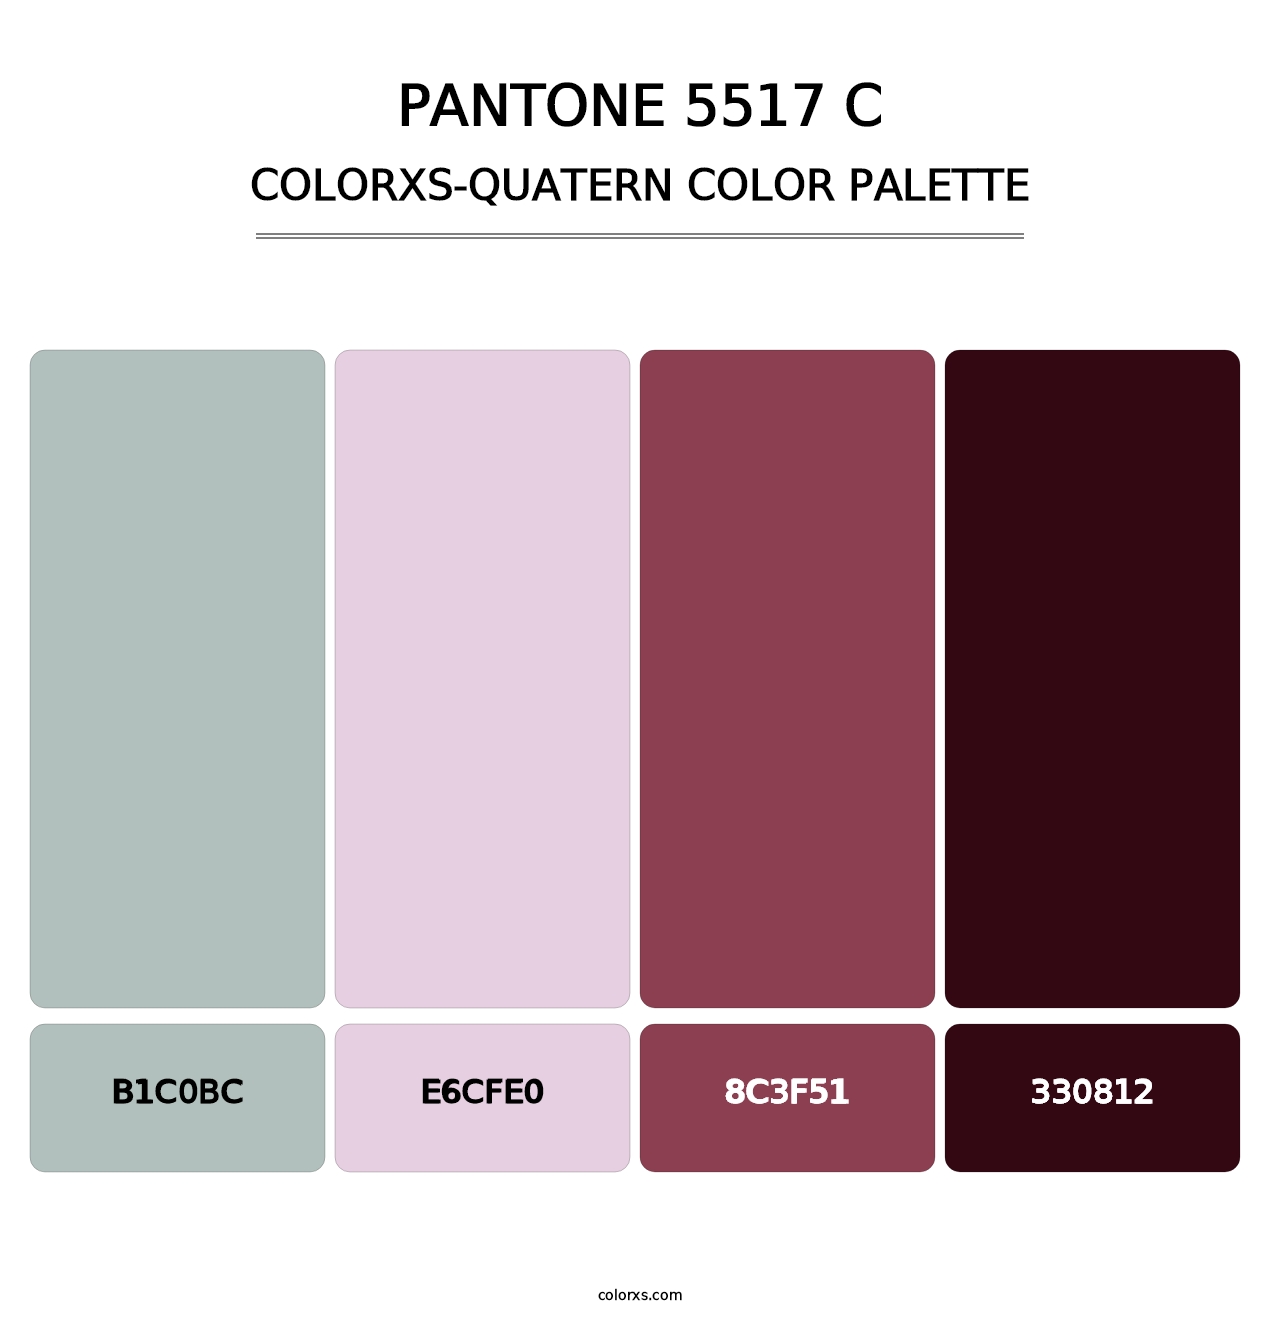 PANTONE 5517 C - Colorxs Quatern Palette